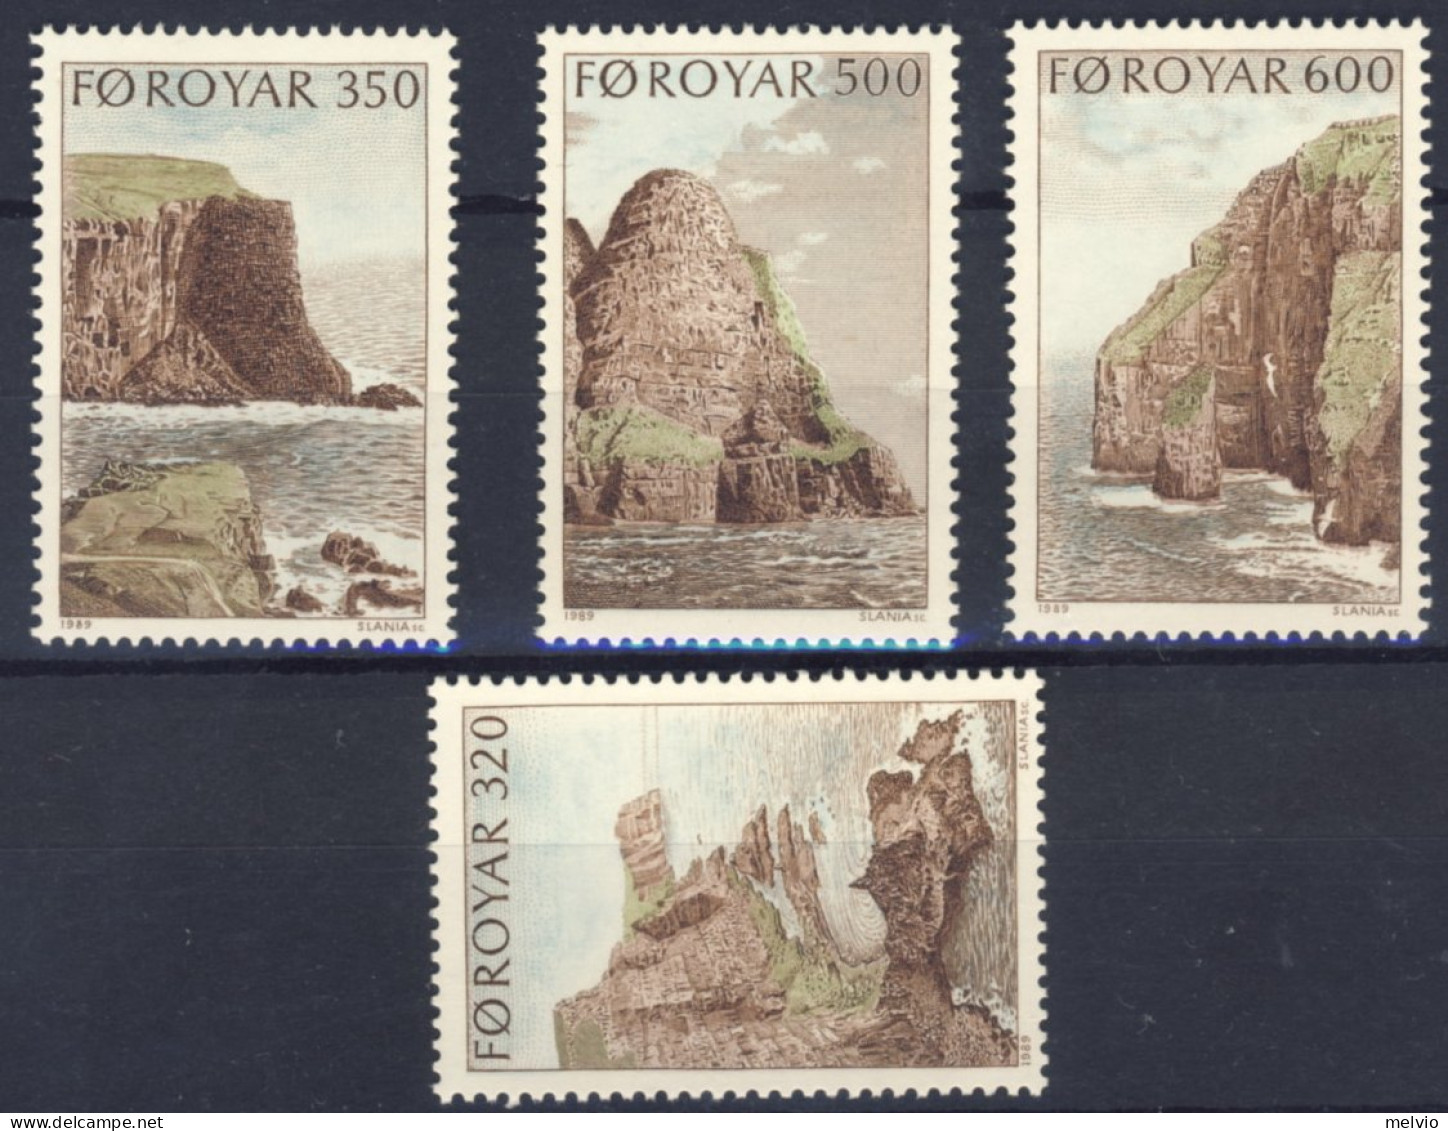 1989-Faeroer (MNH=**) Serie 4 Valori Scogliere - Färöer Inseln